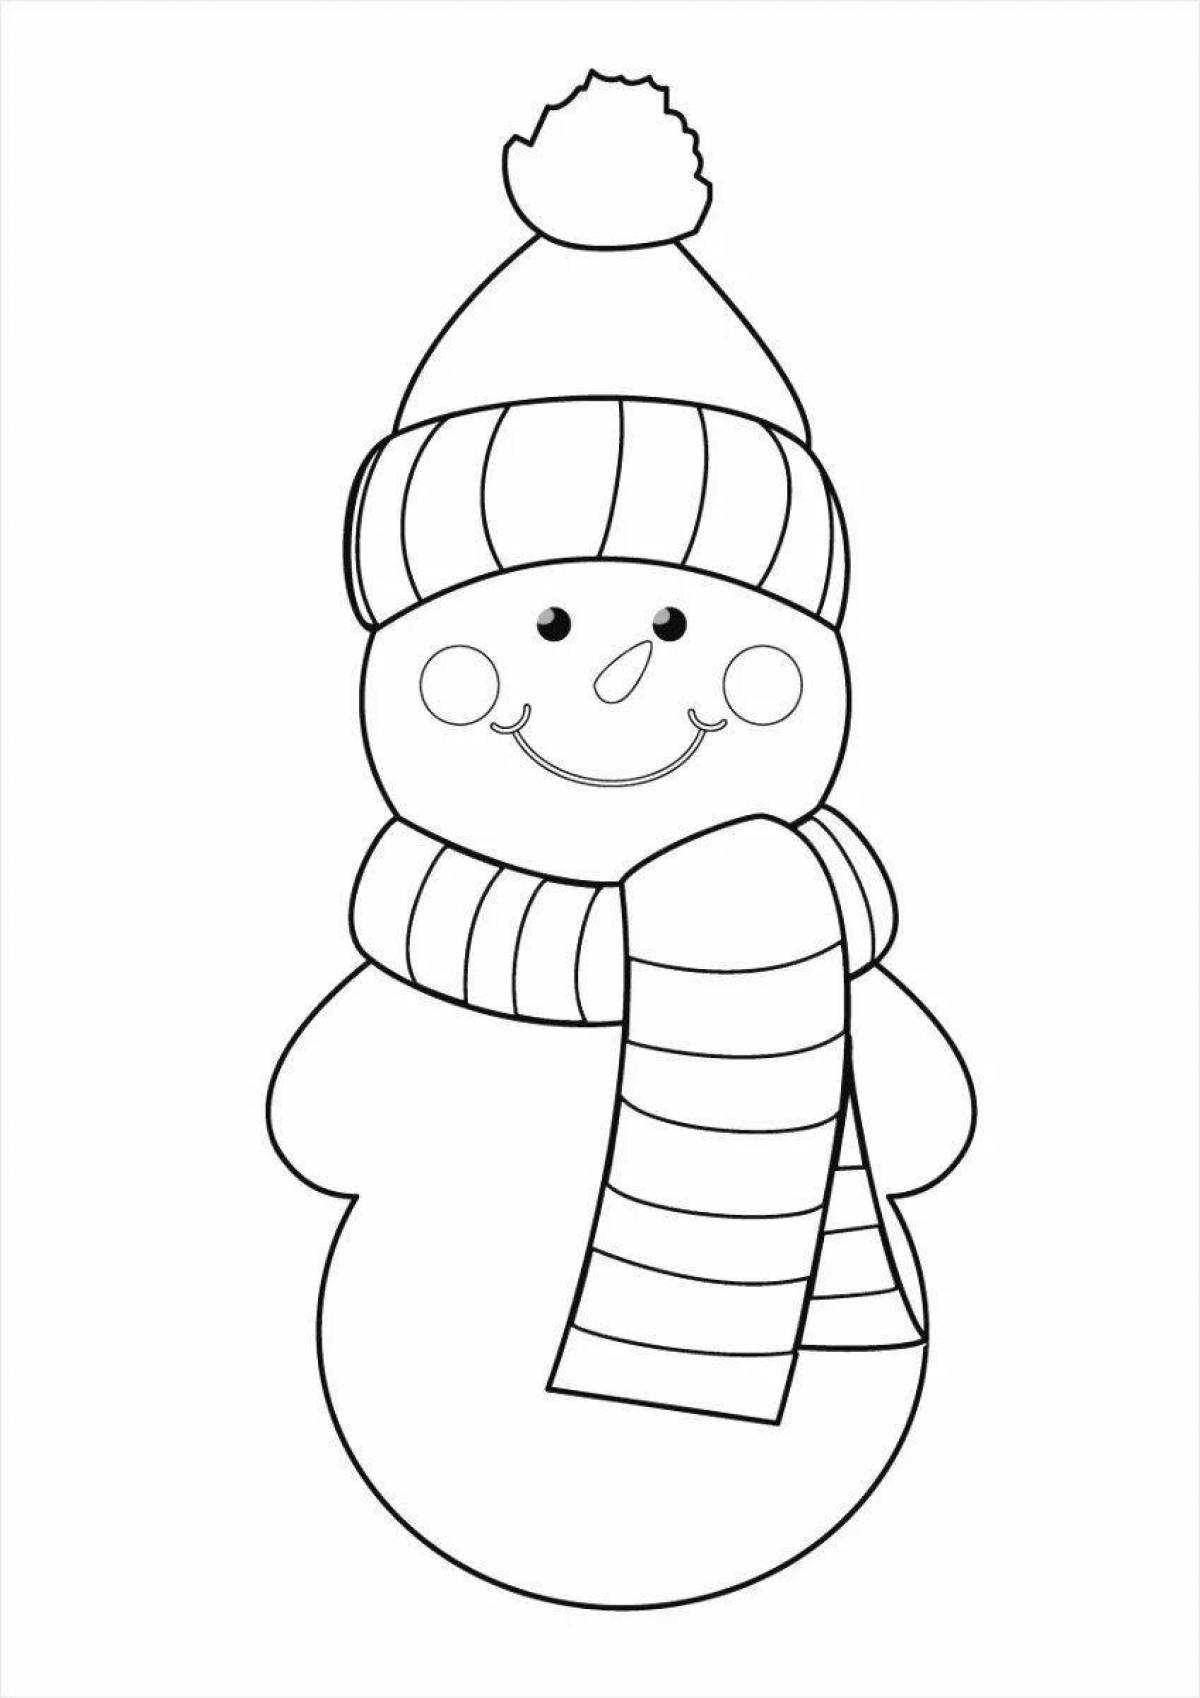 Красочная раскраска снеговик для детей 2-3 лет